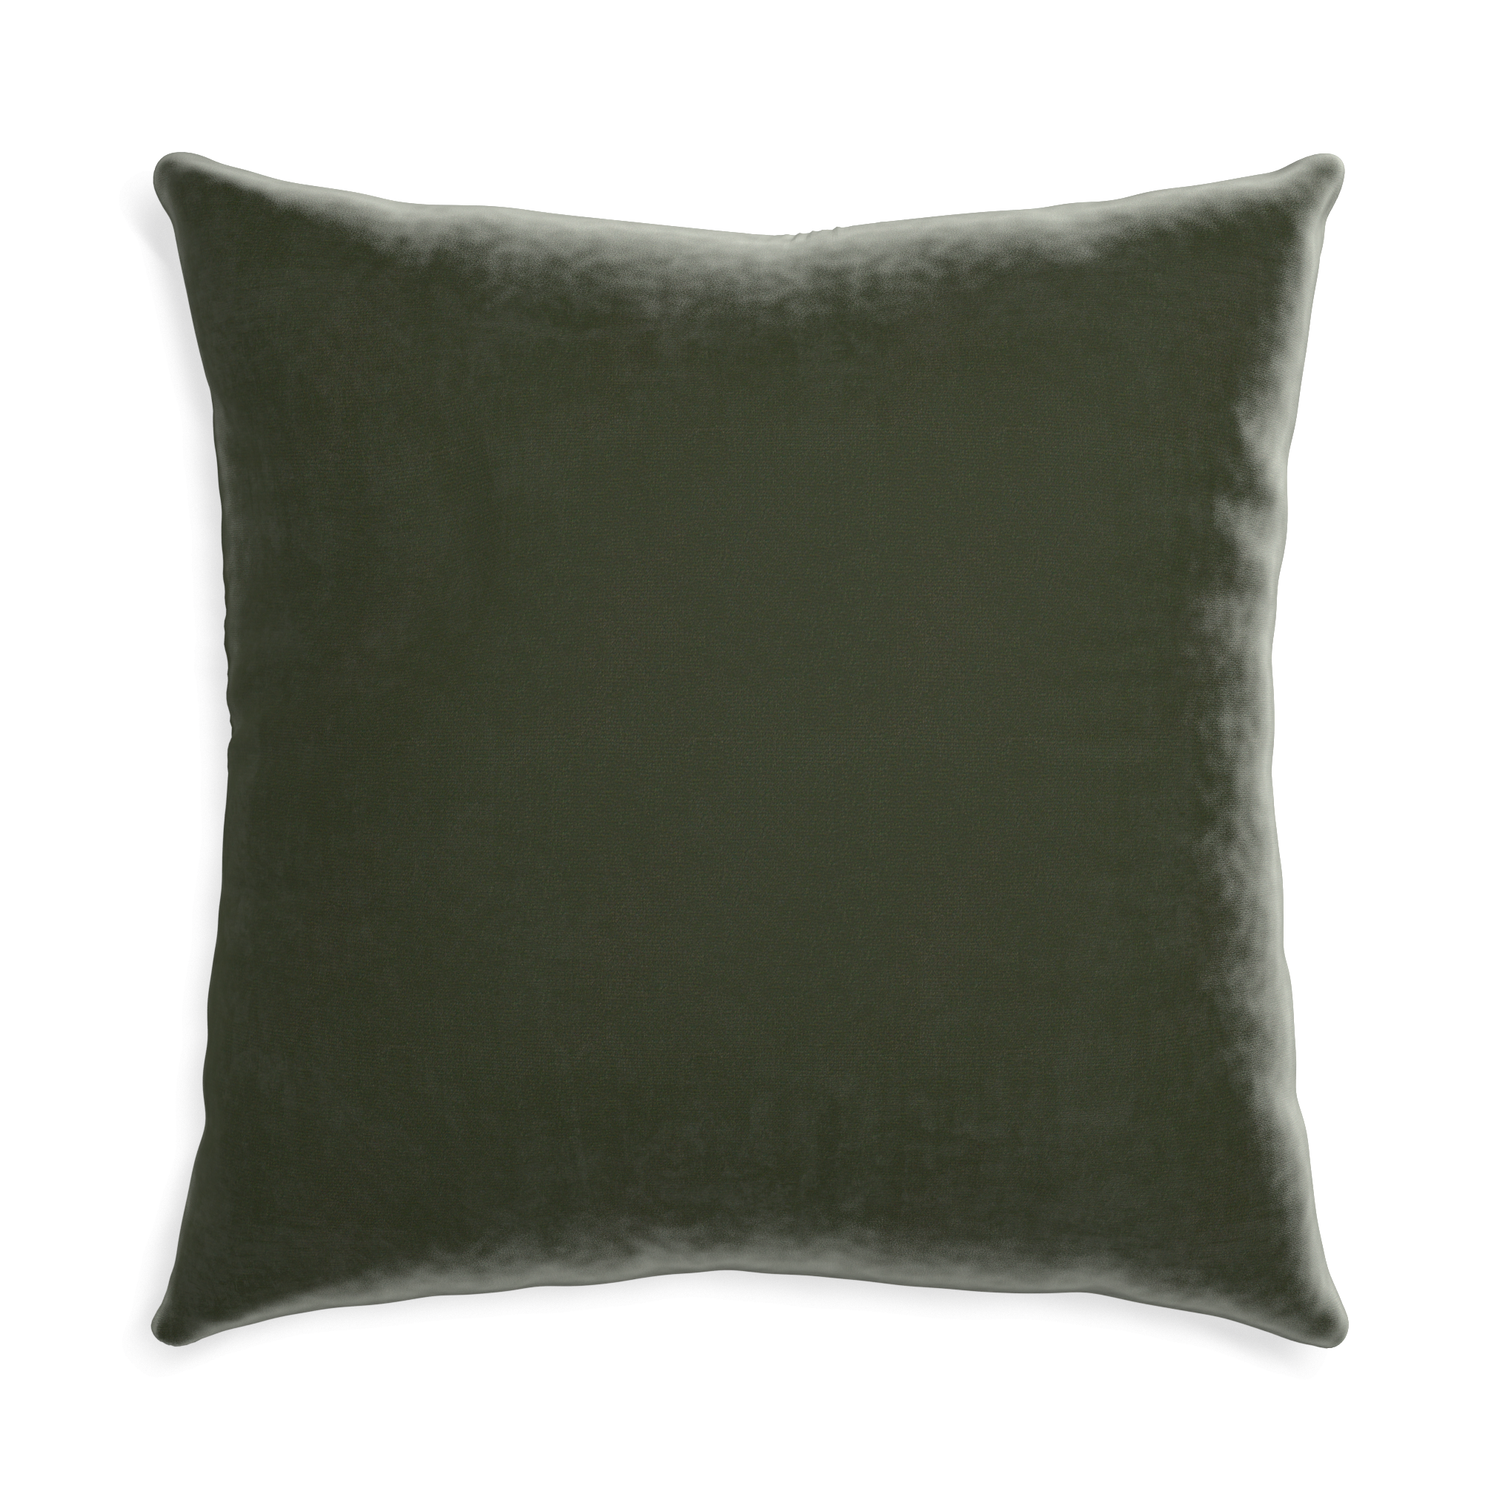 Euro-sham fern velvet custom pillow with none on white background